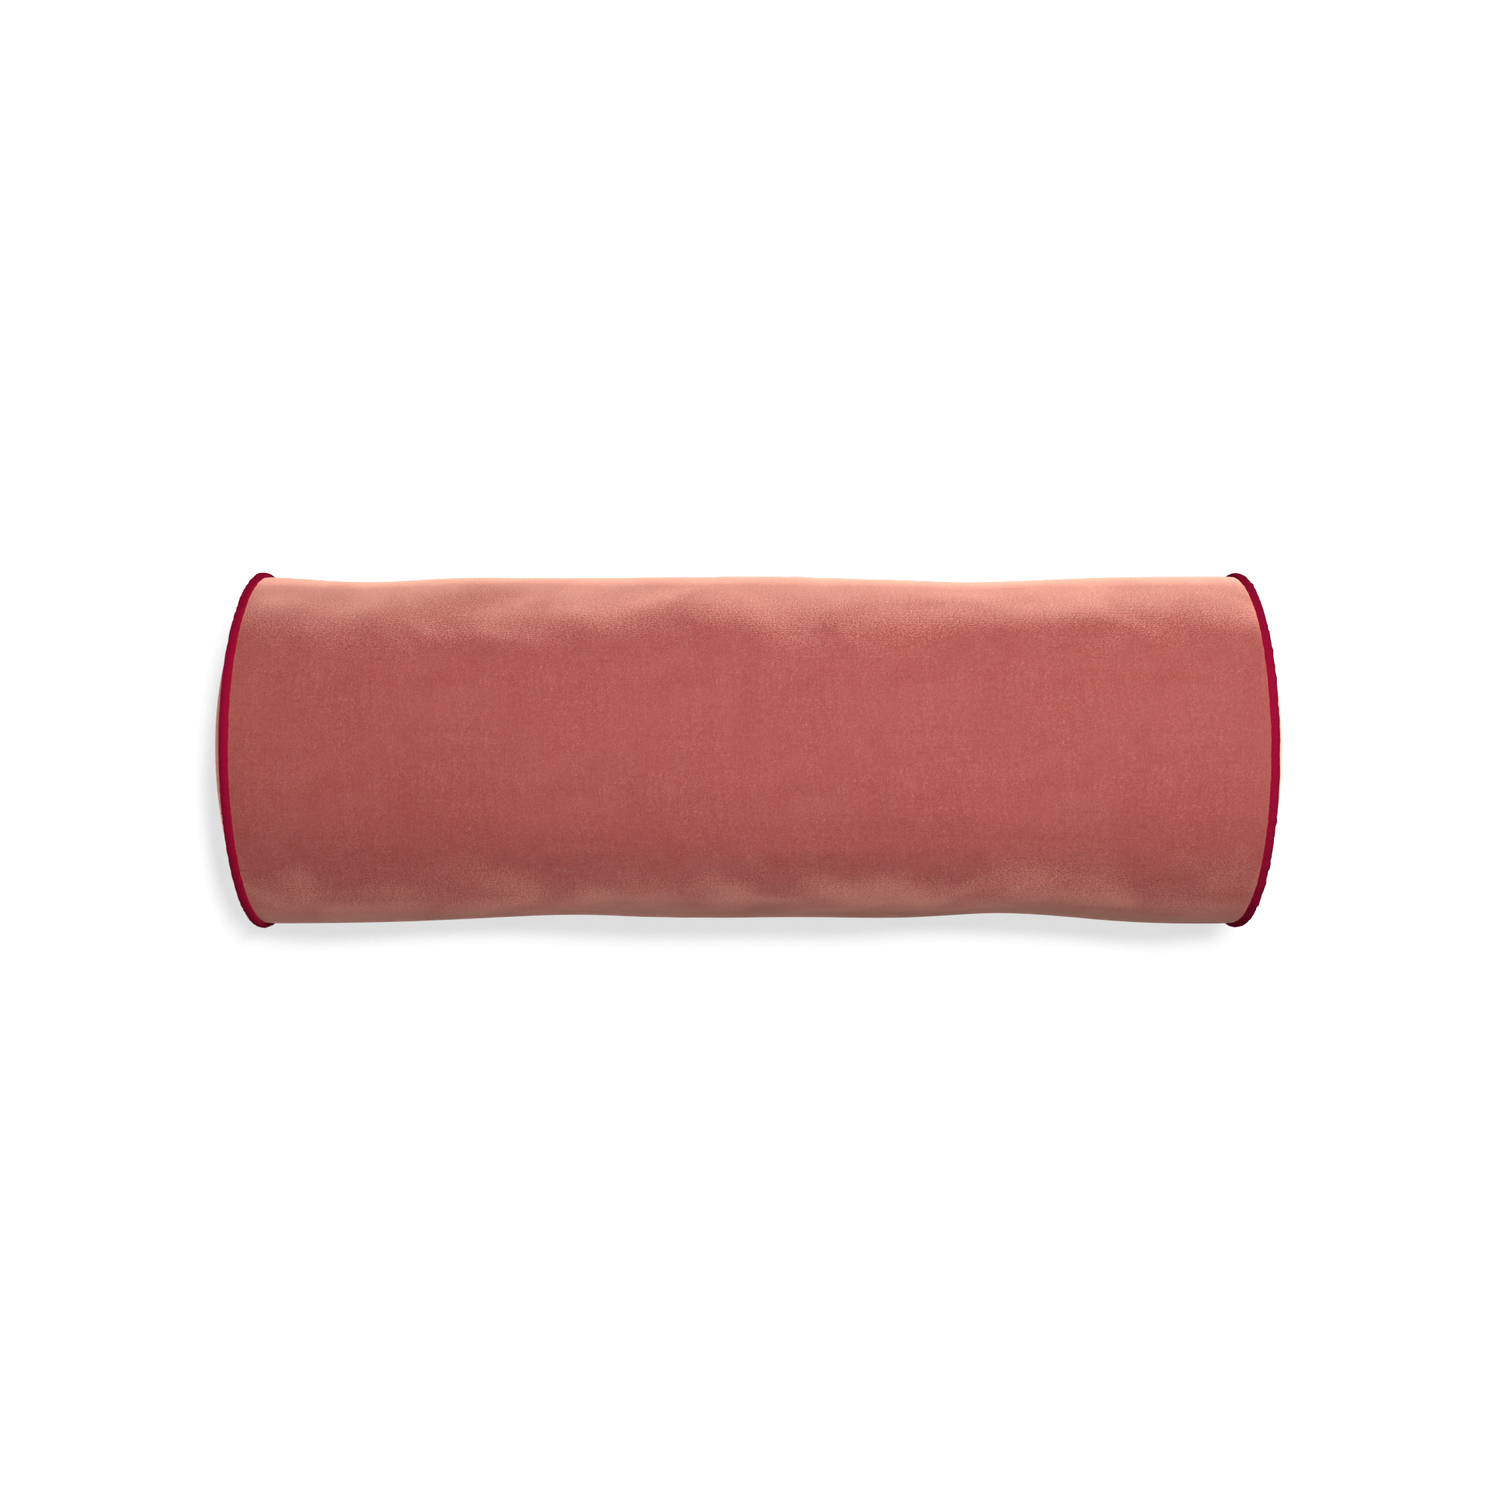 Bolster cosmo velvet custom pillow with raspberry piping on white background